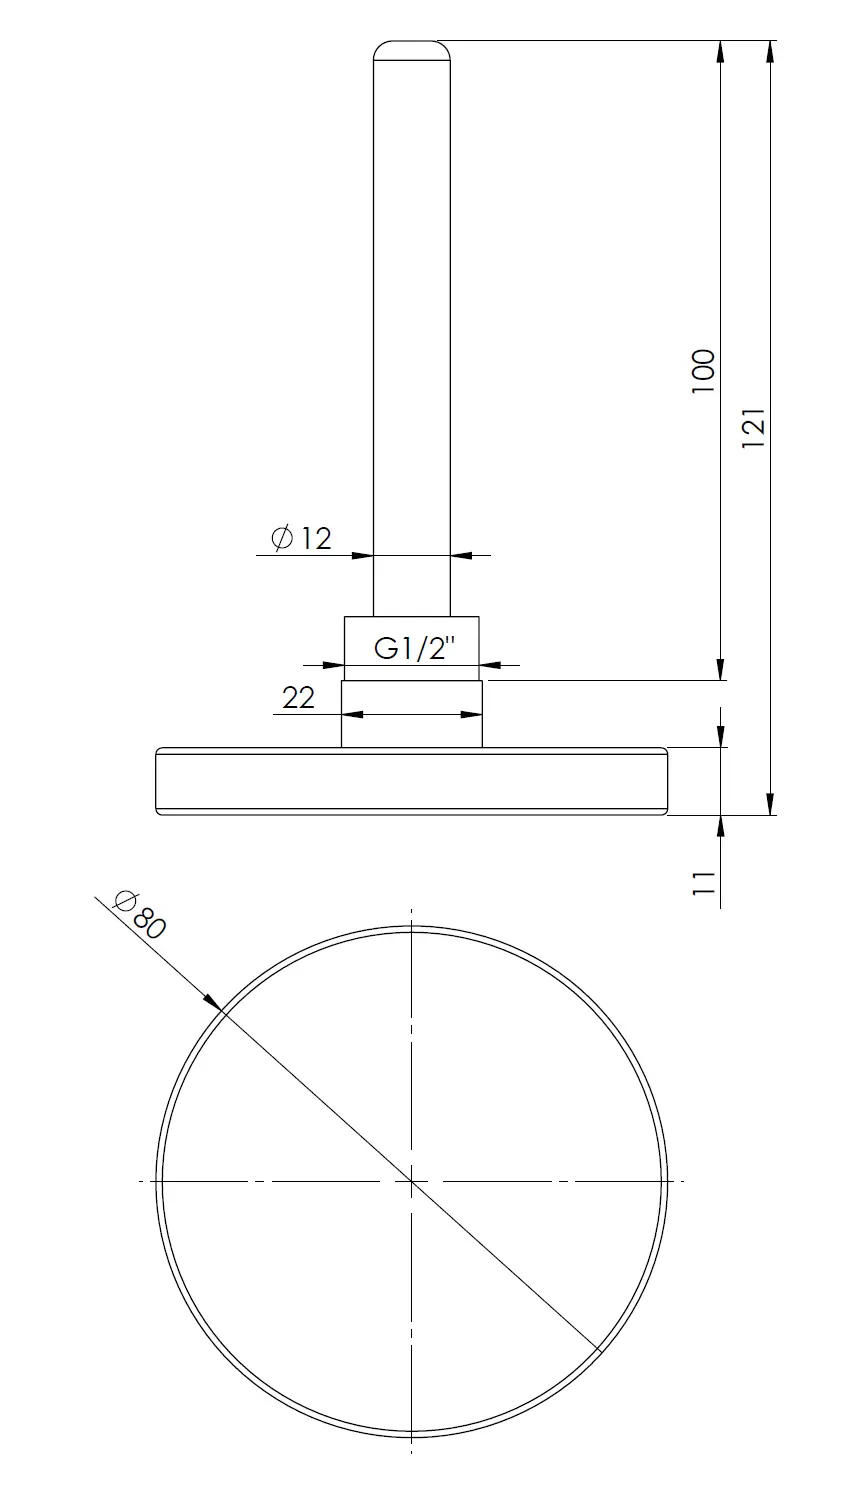 Termometr bimetaliczny BiTh 63, fi63 mm, -20÷60°C, L 100 mm, G1/2", ax, kl. 2 - budowa